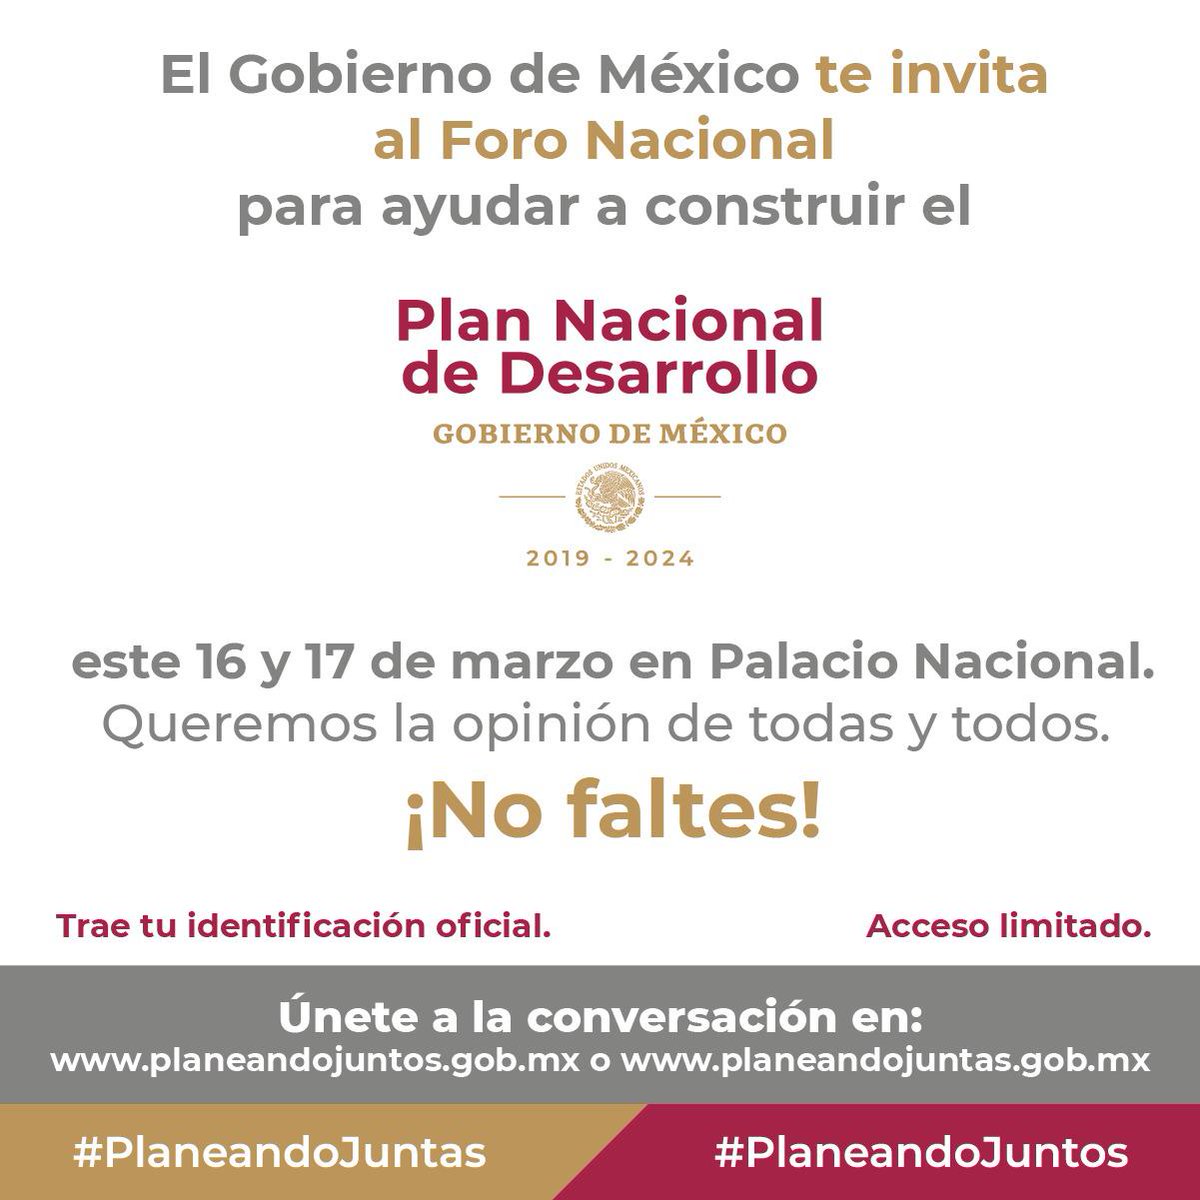 Este 16 y 17 de marzo, Palacio Nacional será la sede del Foro Nacional para la elaboración del Plan Nacional de Desarrollo ¡Asiste! #PlaneandoJuntos #PlaneandoJuntas